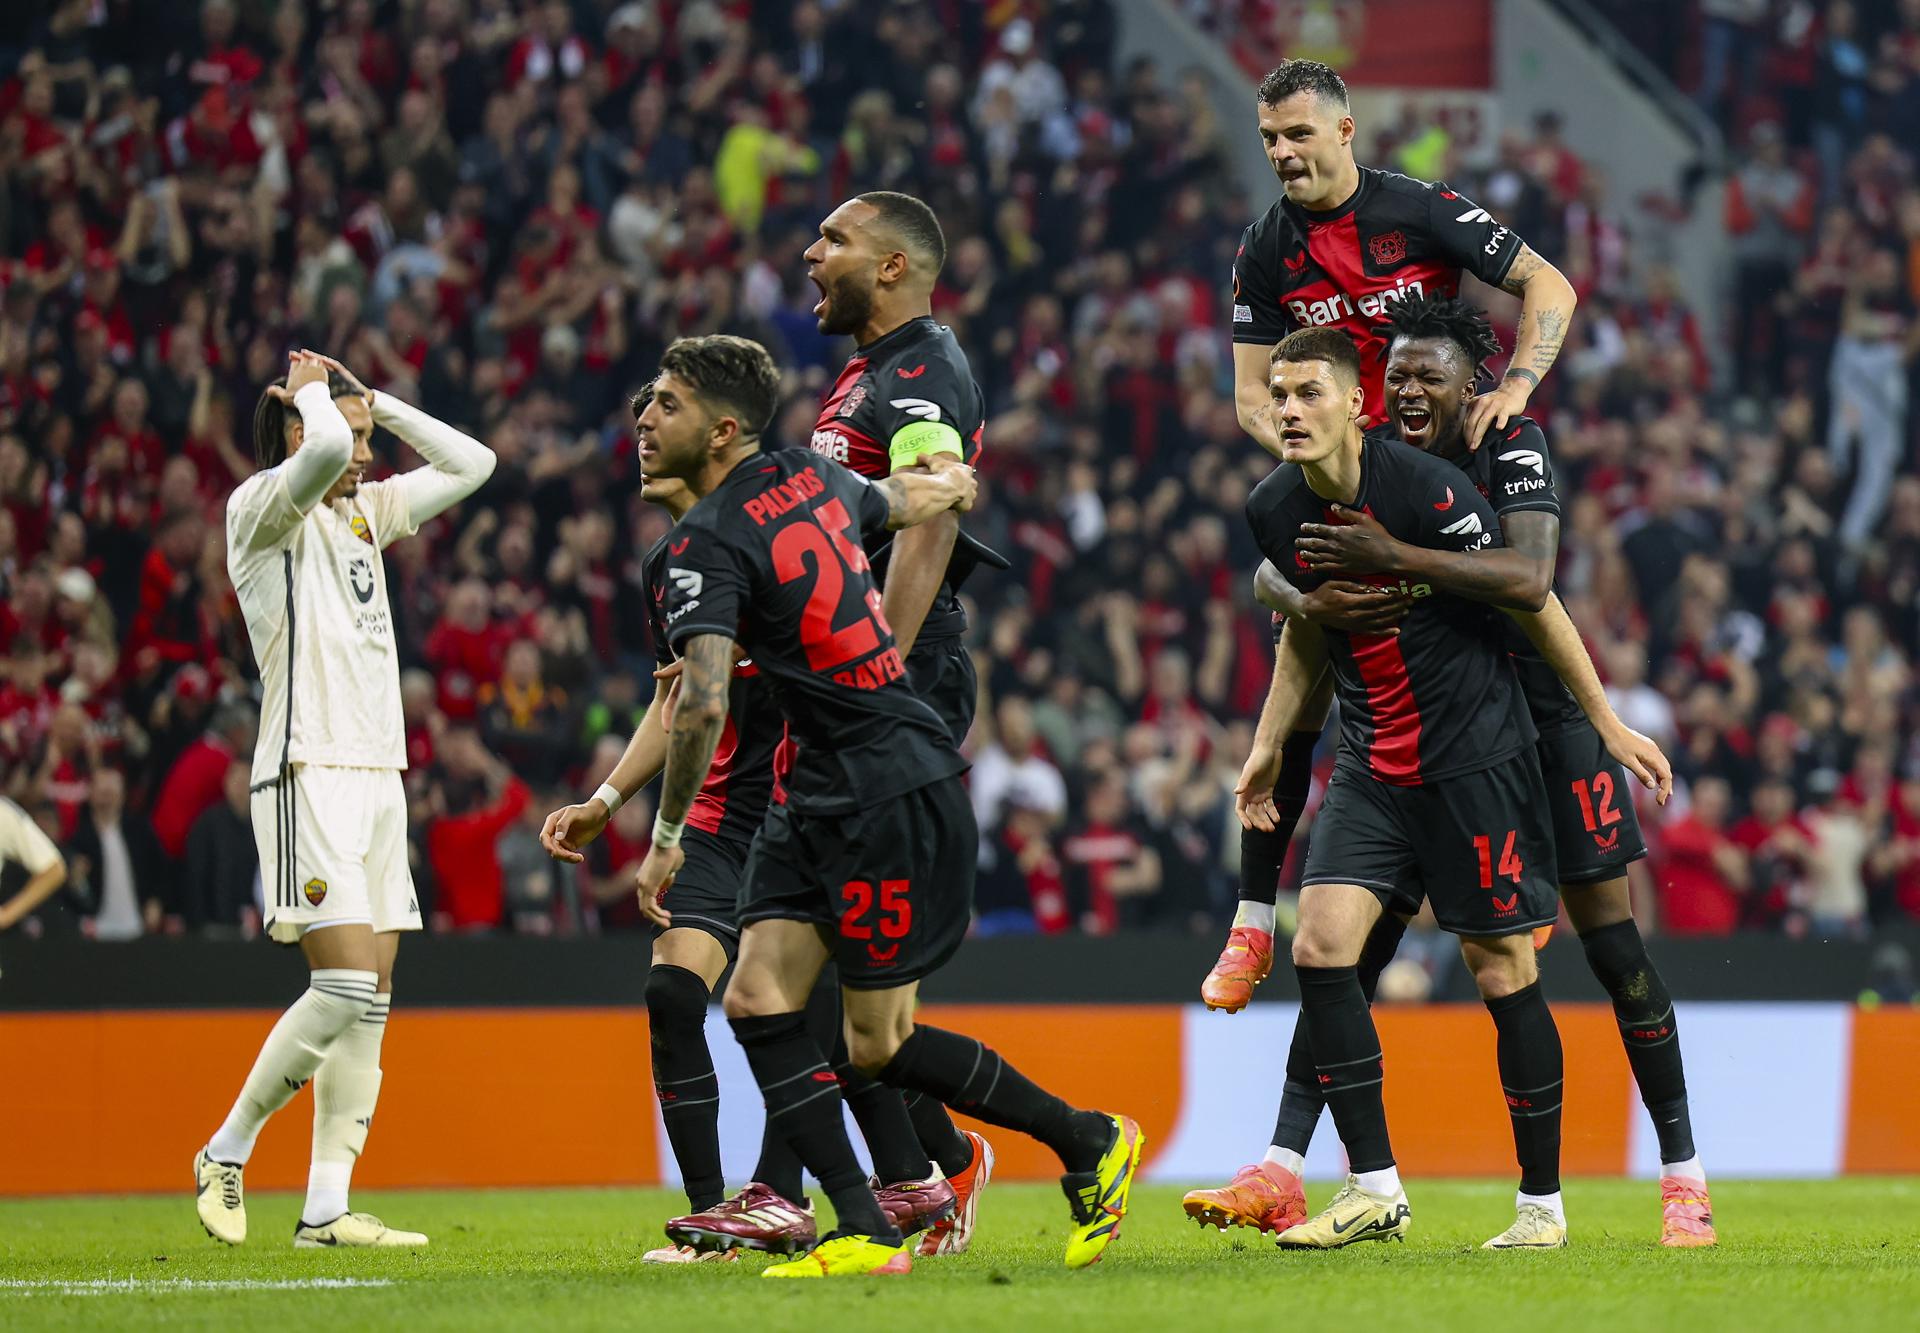 Bayer Leverkusen se metió en la final de la Europa League tras un empate agónico ante la Roma